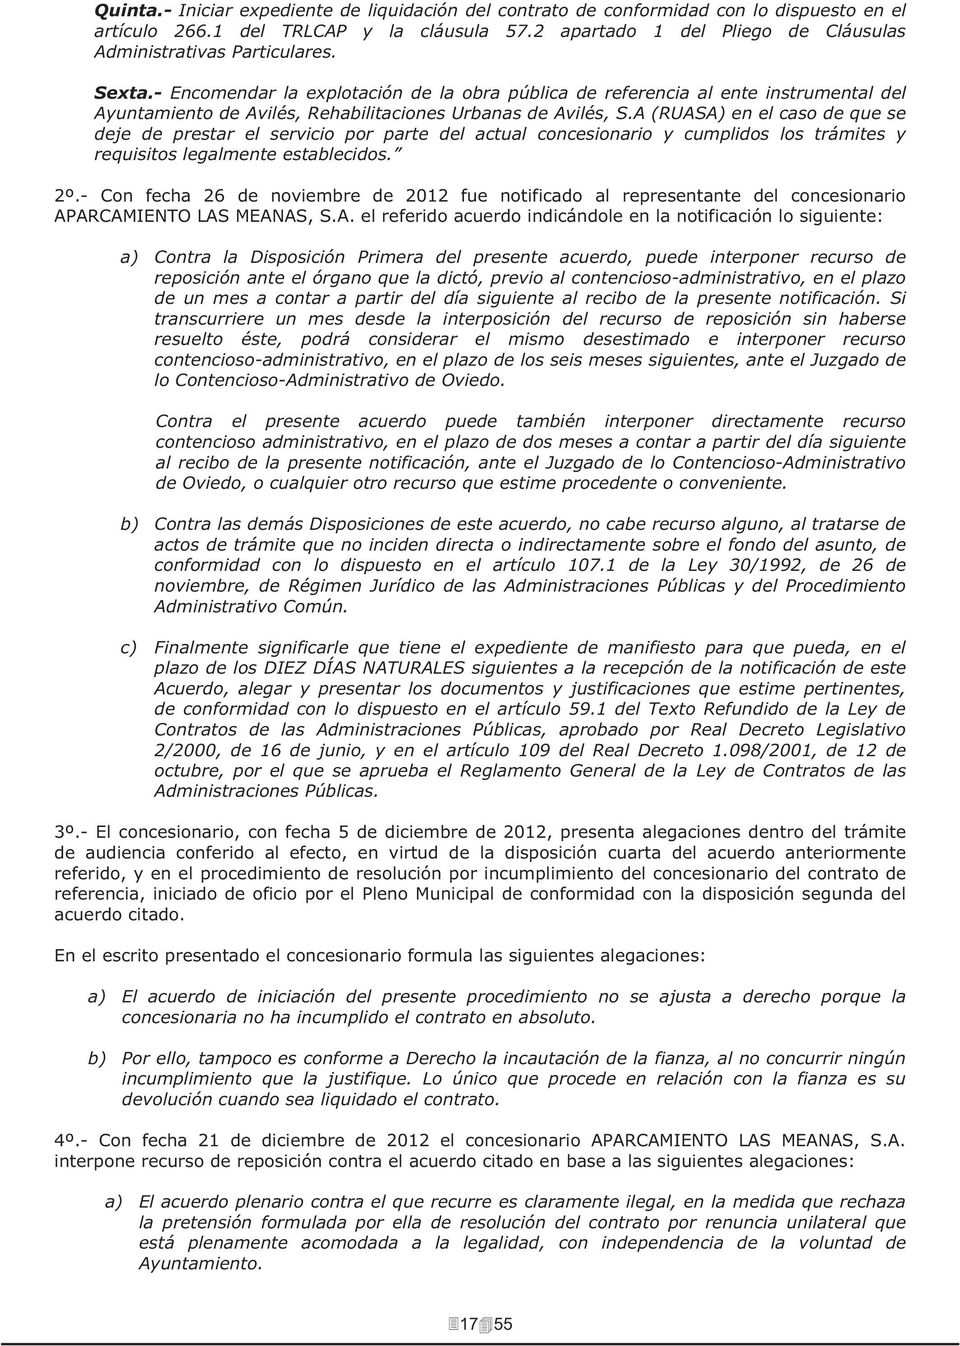 - Encomendar la explotación de la obra pública de referencia al ente instrumental del Ayuntamiento de Avilés, Rehabilitaciones Urbanas de Avilés, S.